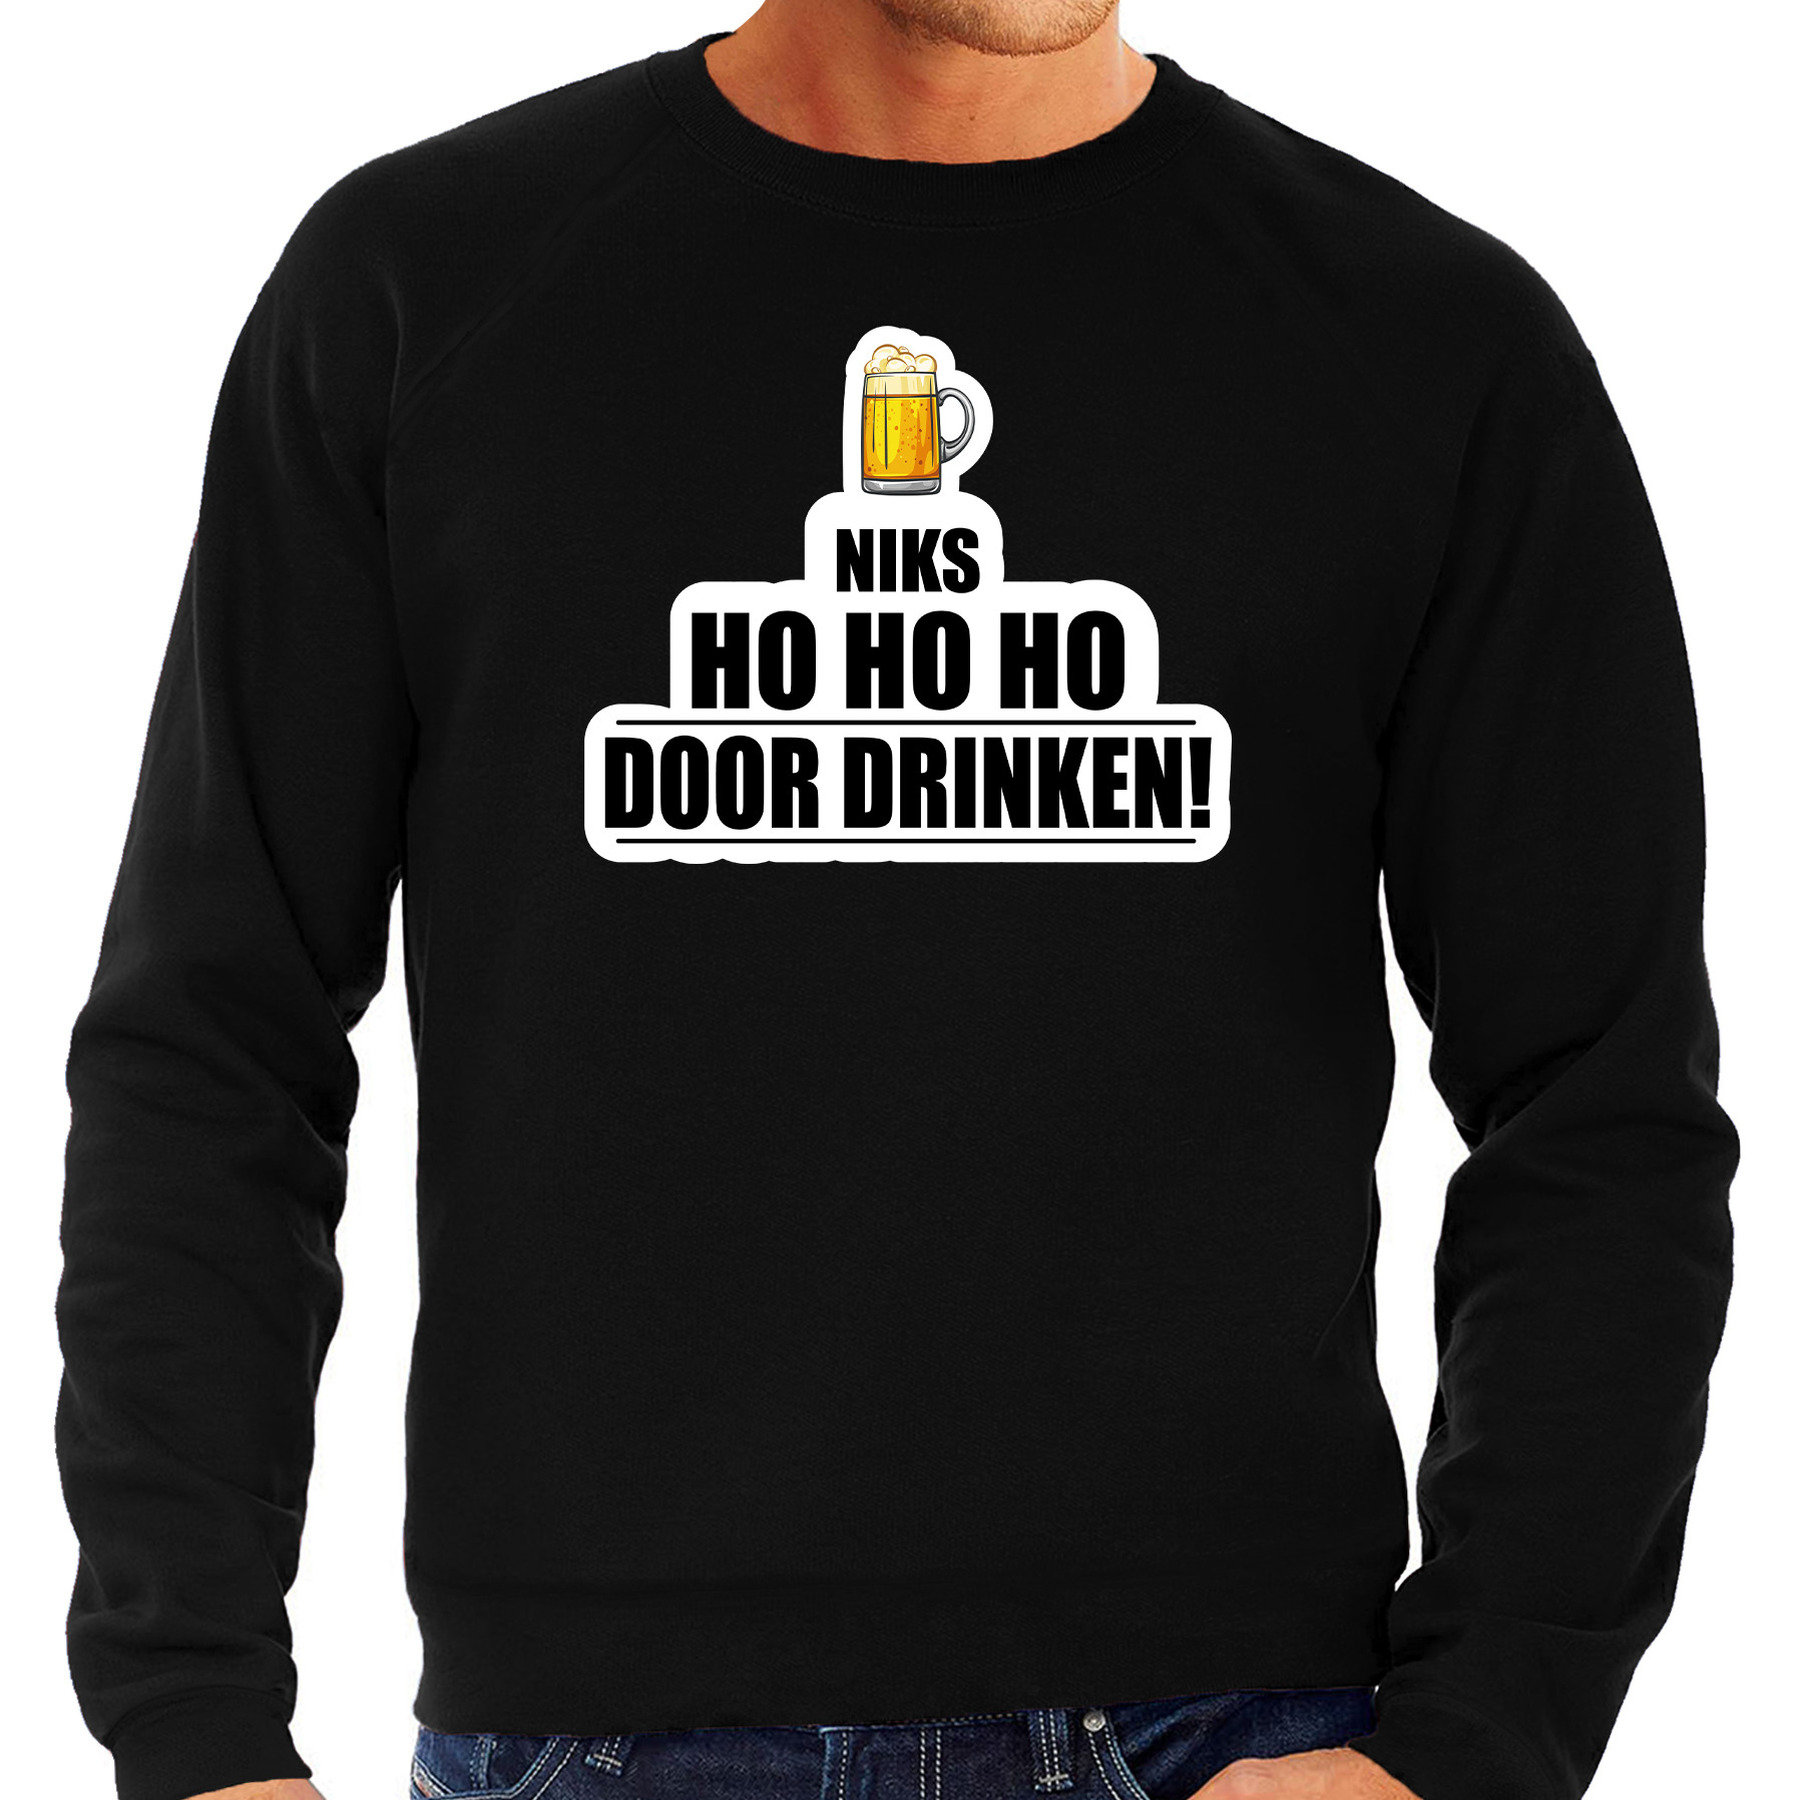 Niks ho ho ho bier doordrinken foute Kerst sweater-trui zwart voor heren